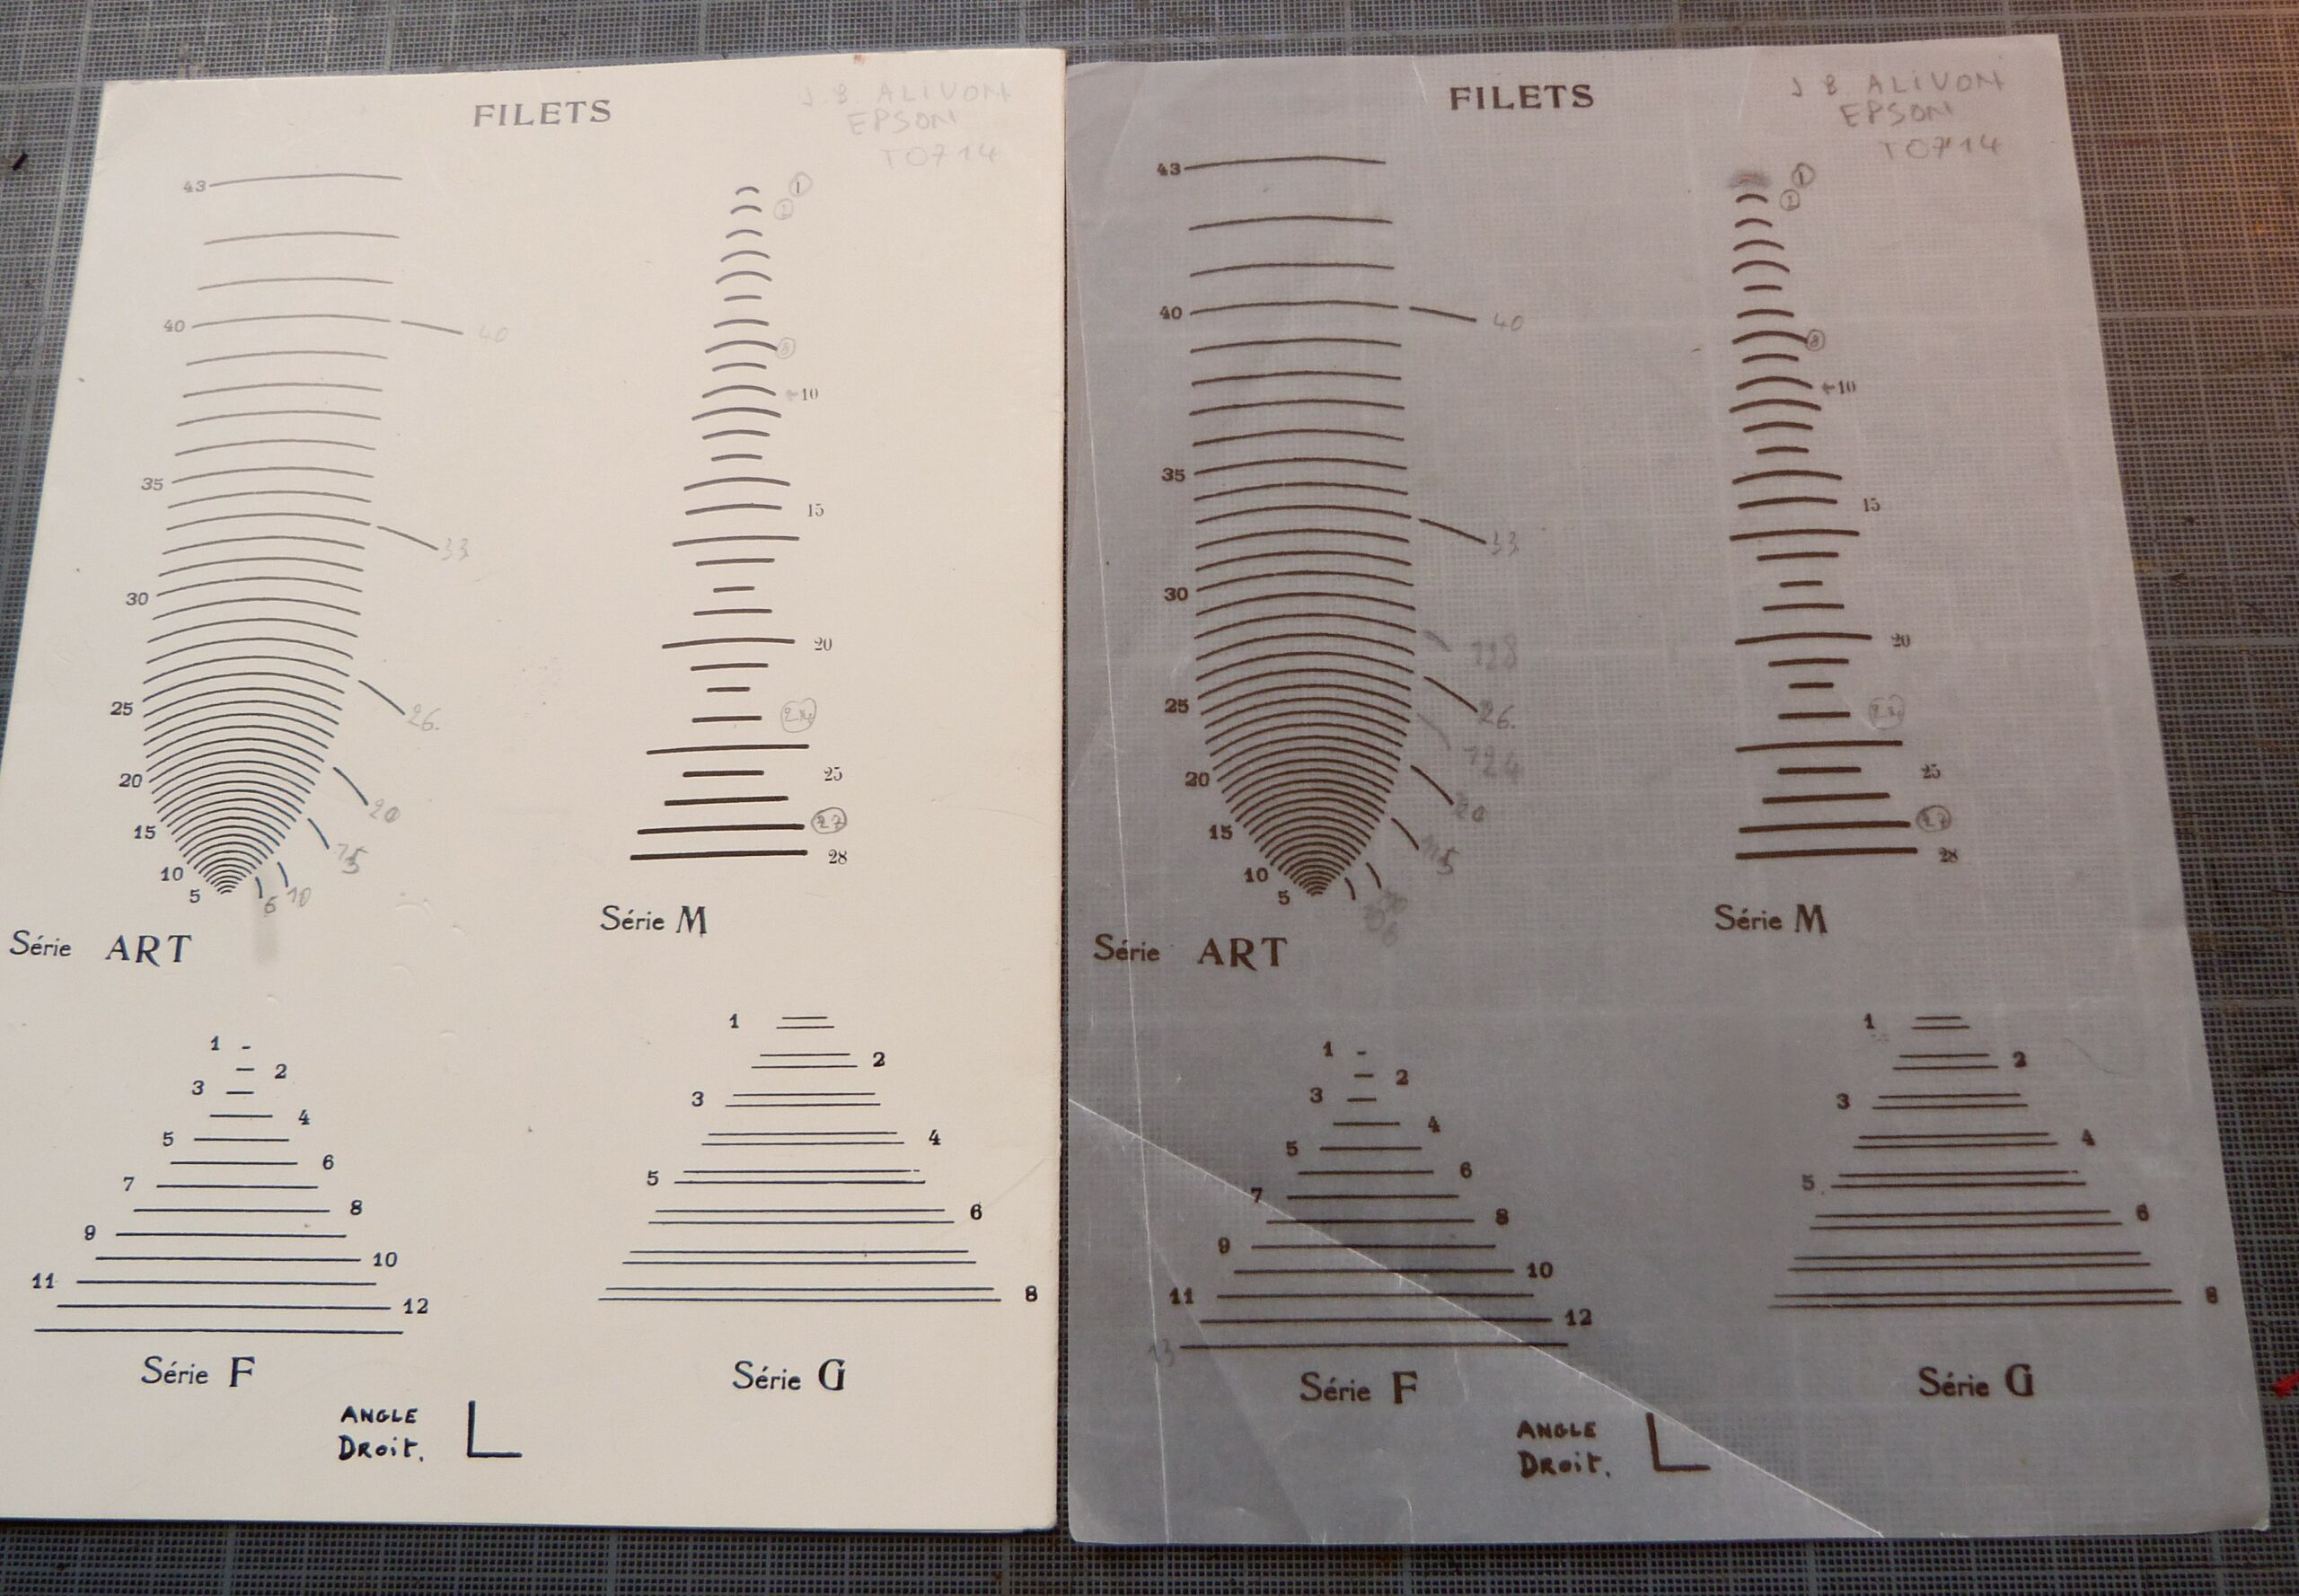 Photocopie sur papier calque du catalogue J.B.Alivon